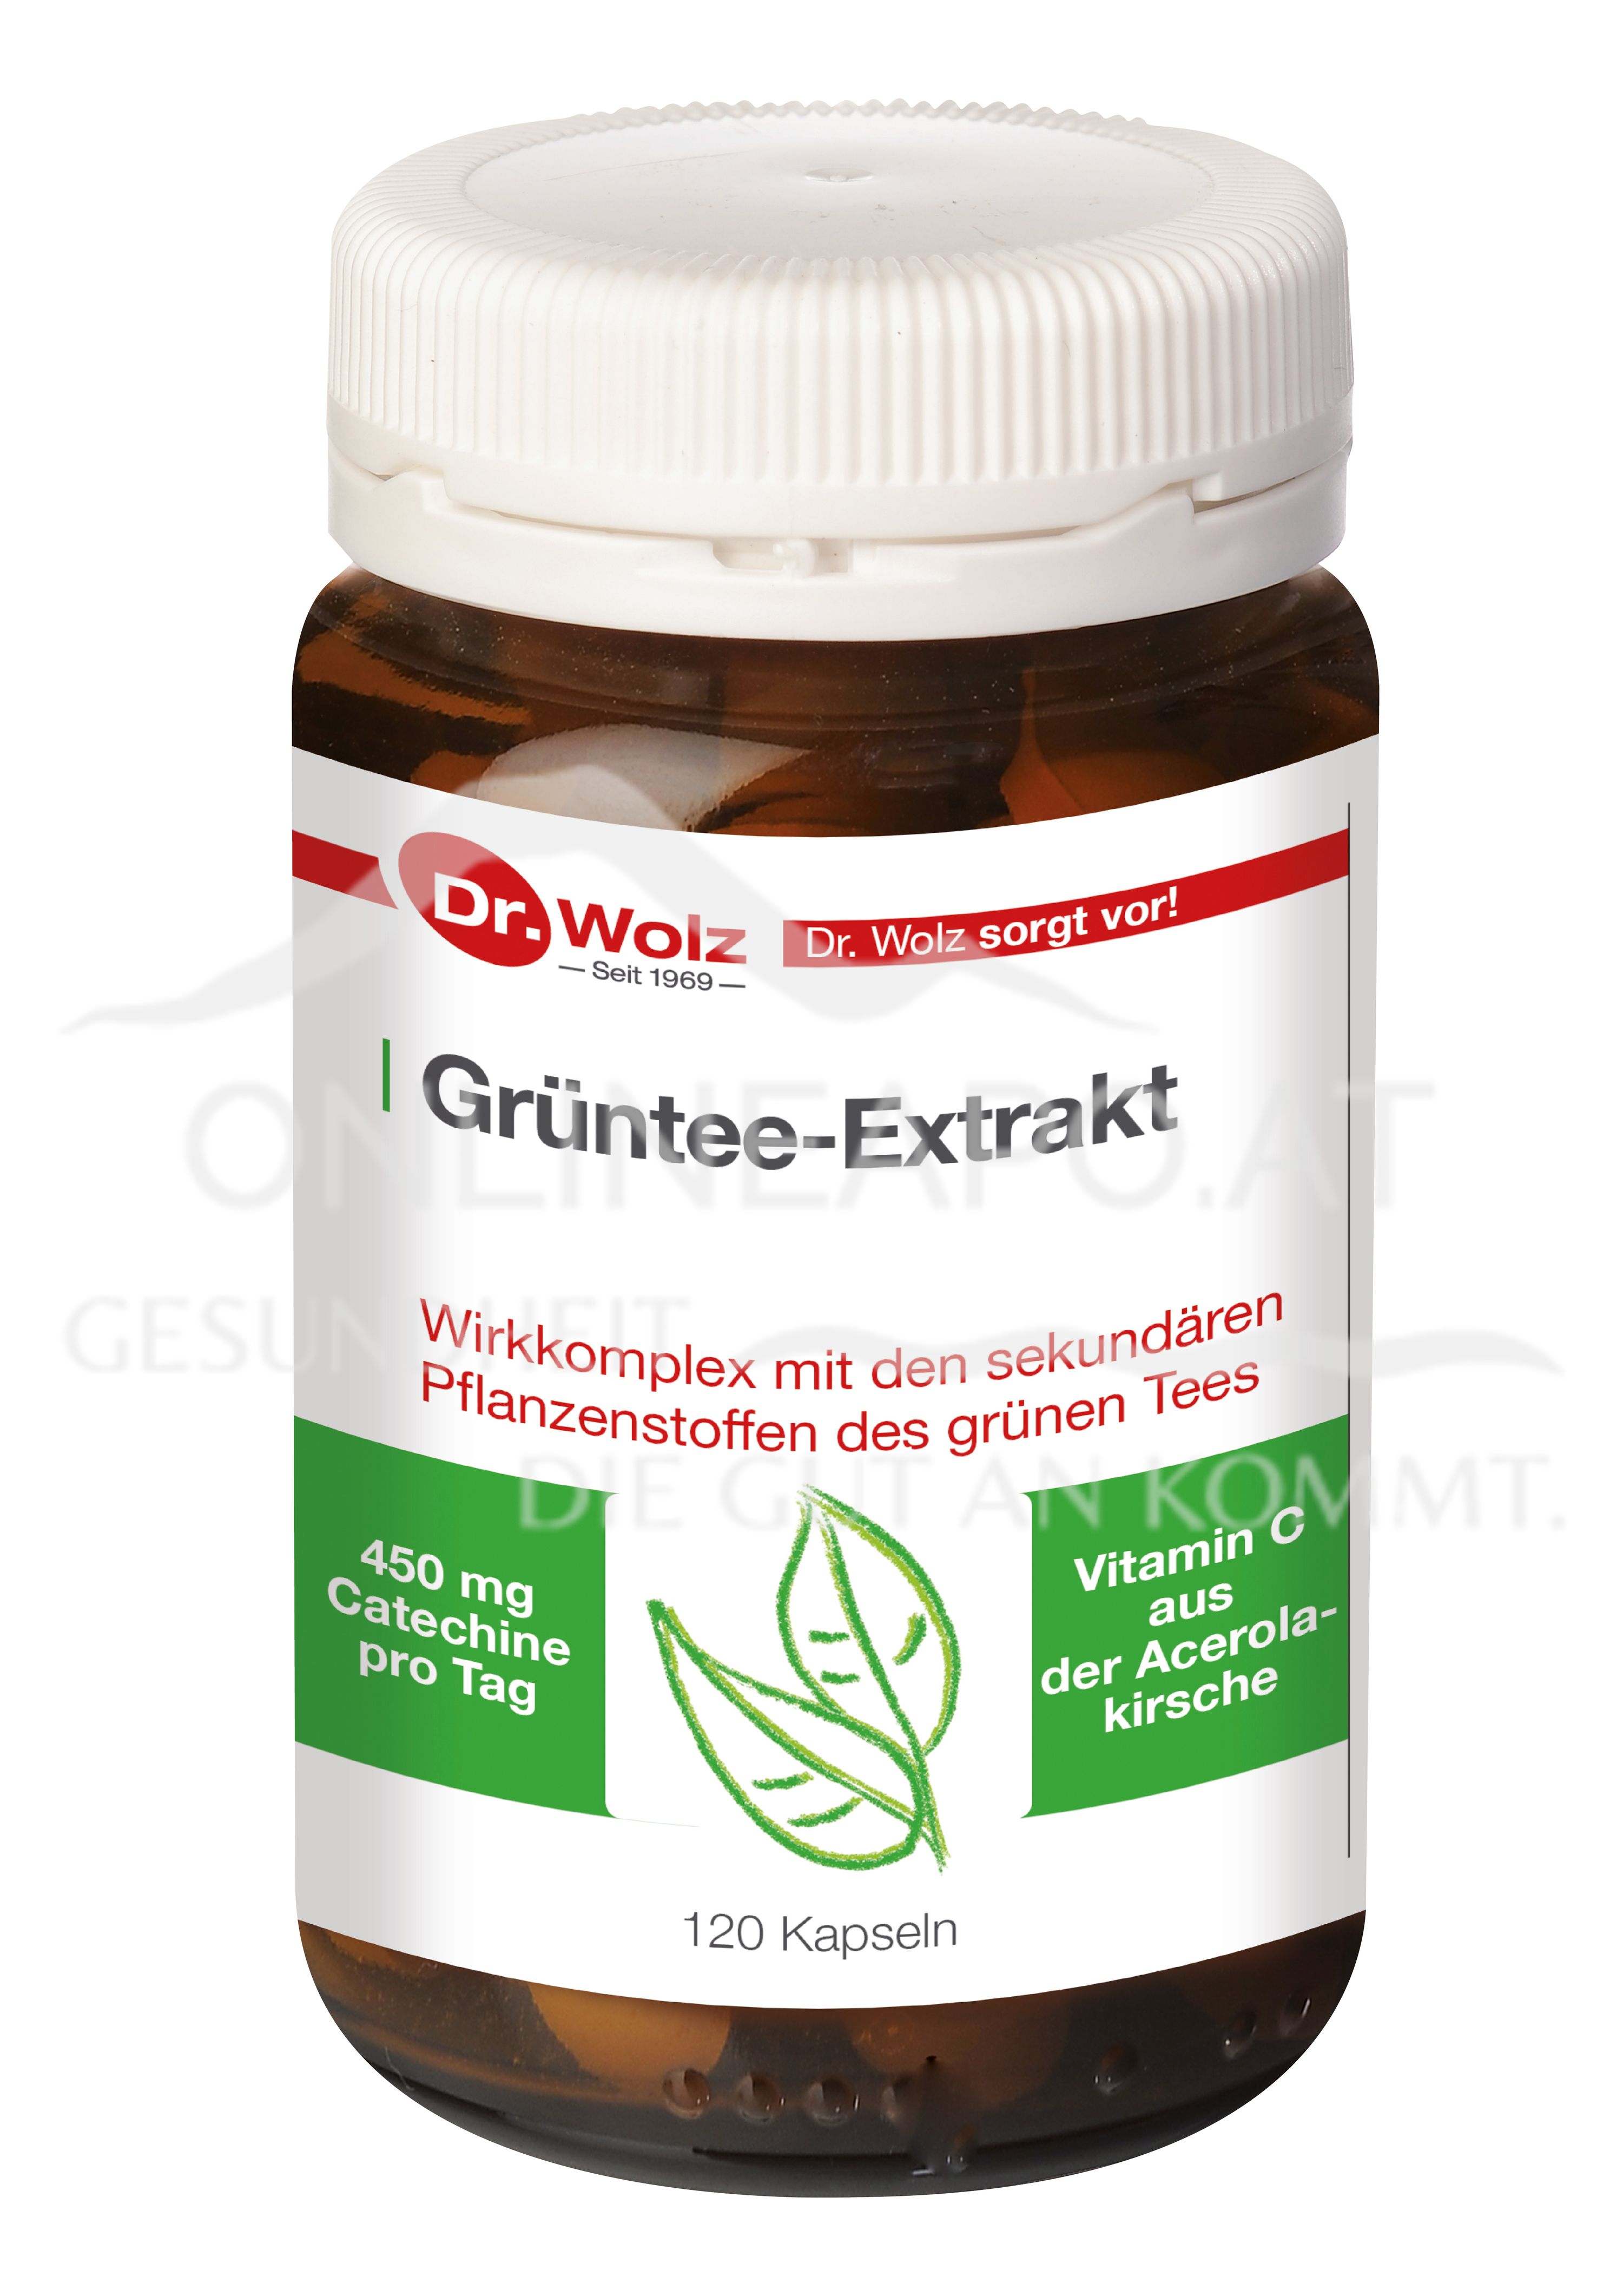 Dr. Wolz Grüntee-Extrakt Kapseln